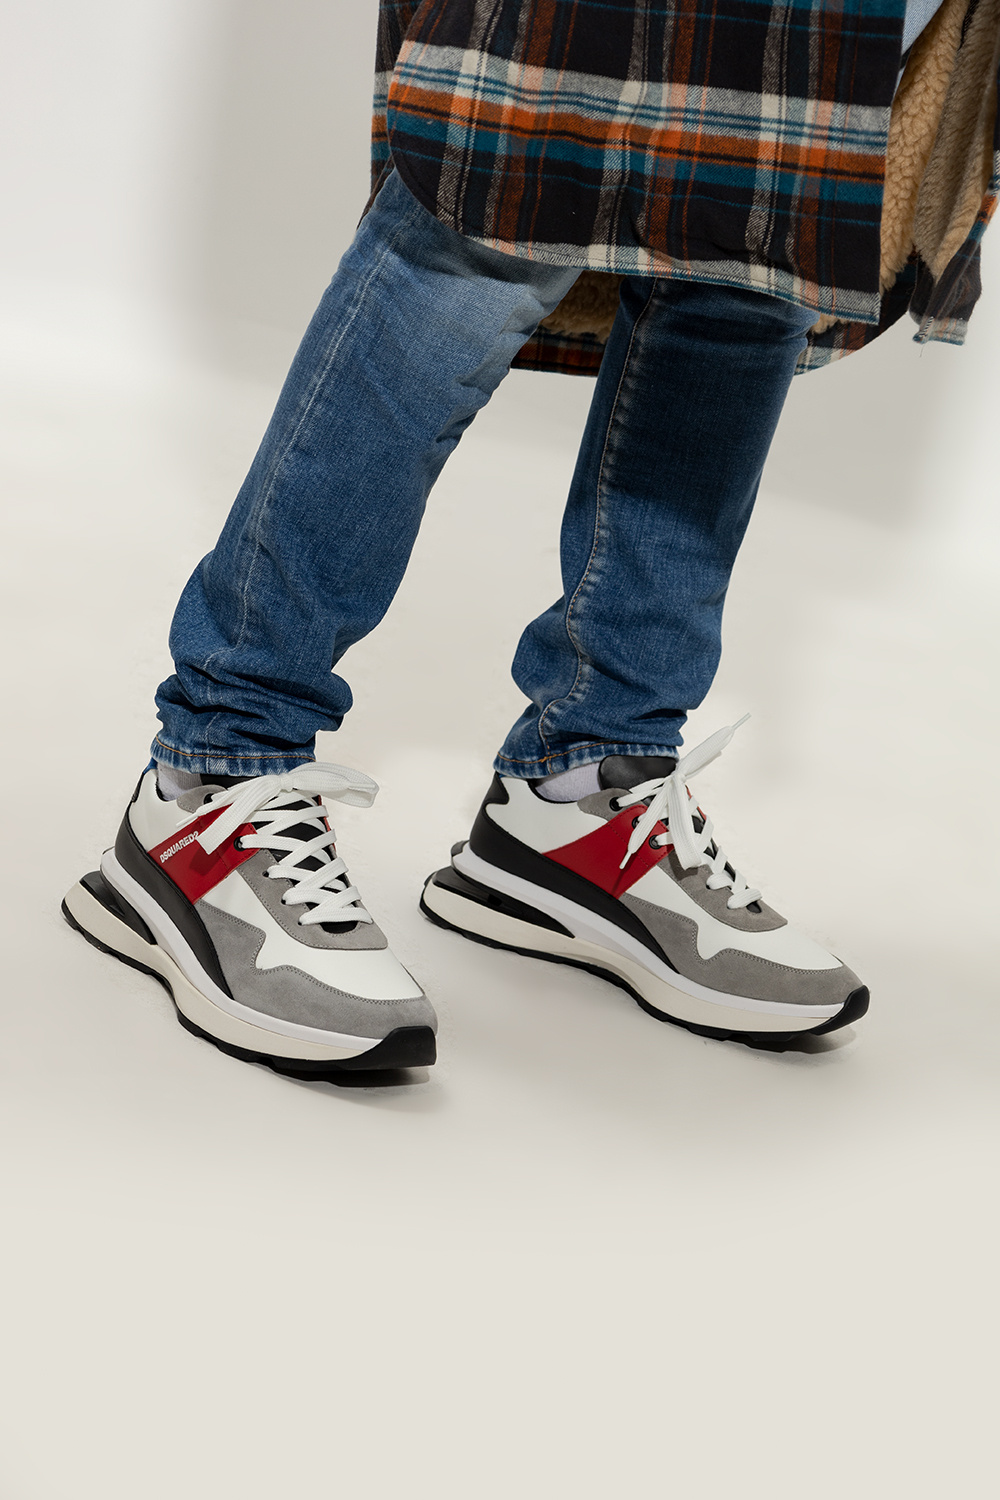 Dsquared2 'Slash' sneakers | Men's Shoes | Vitkac